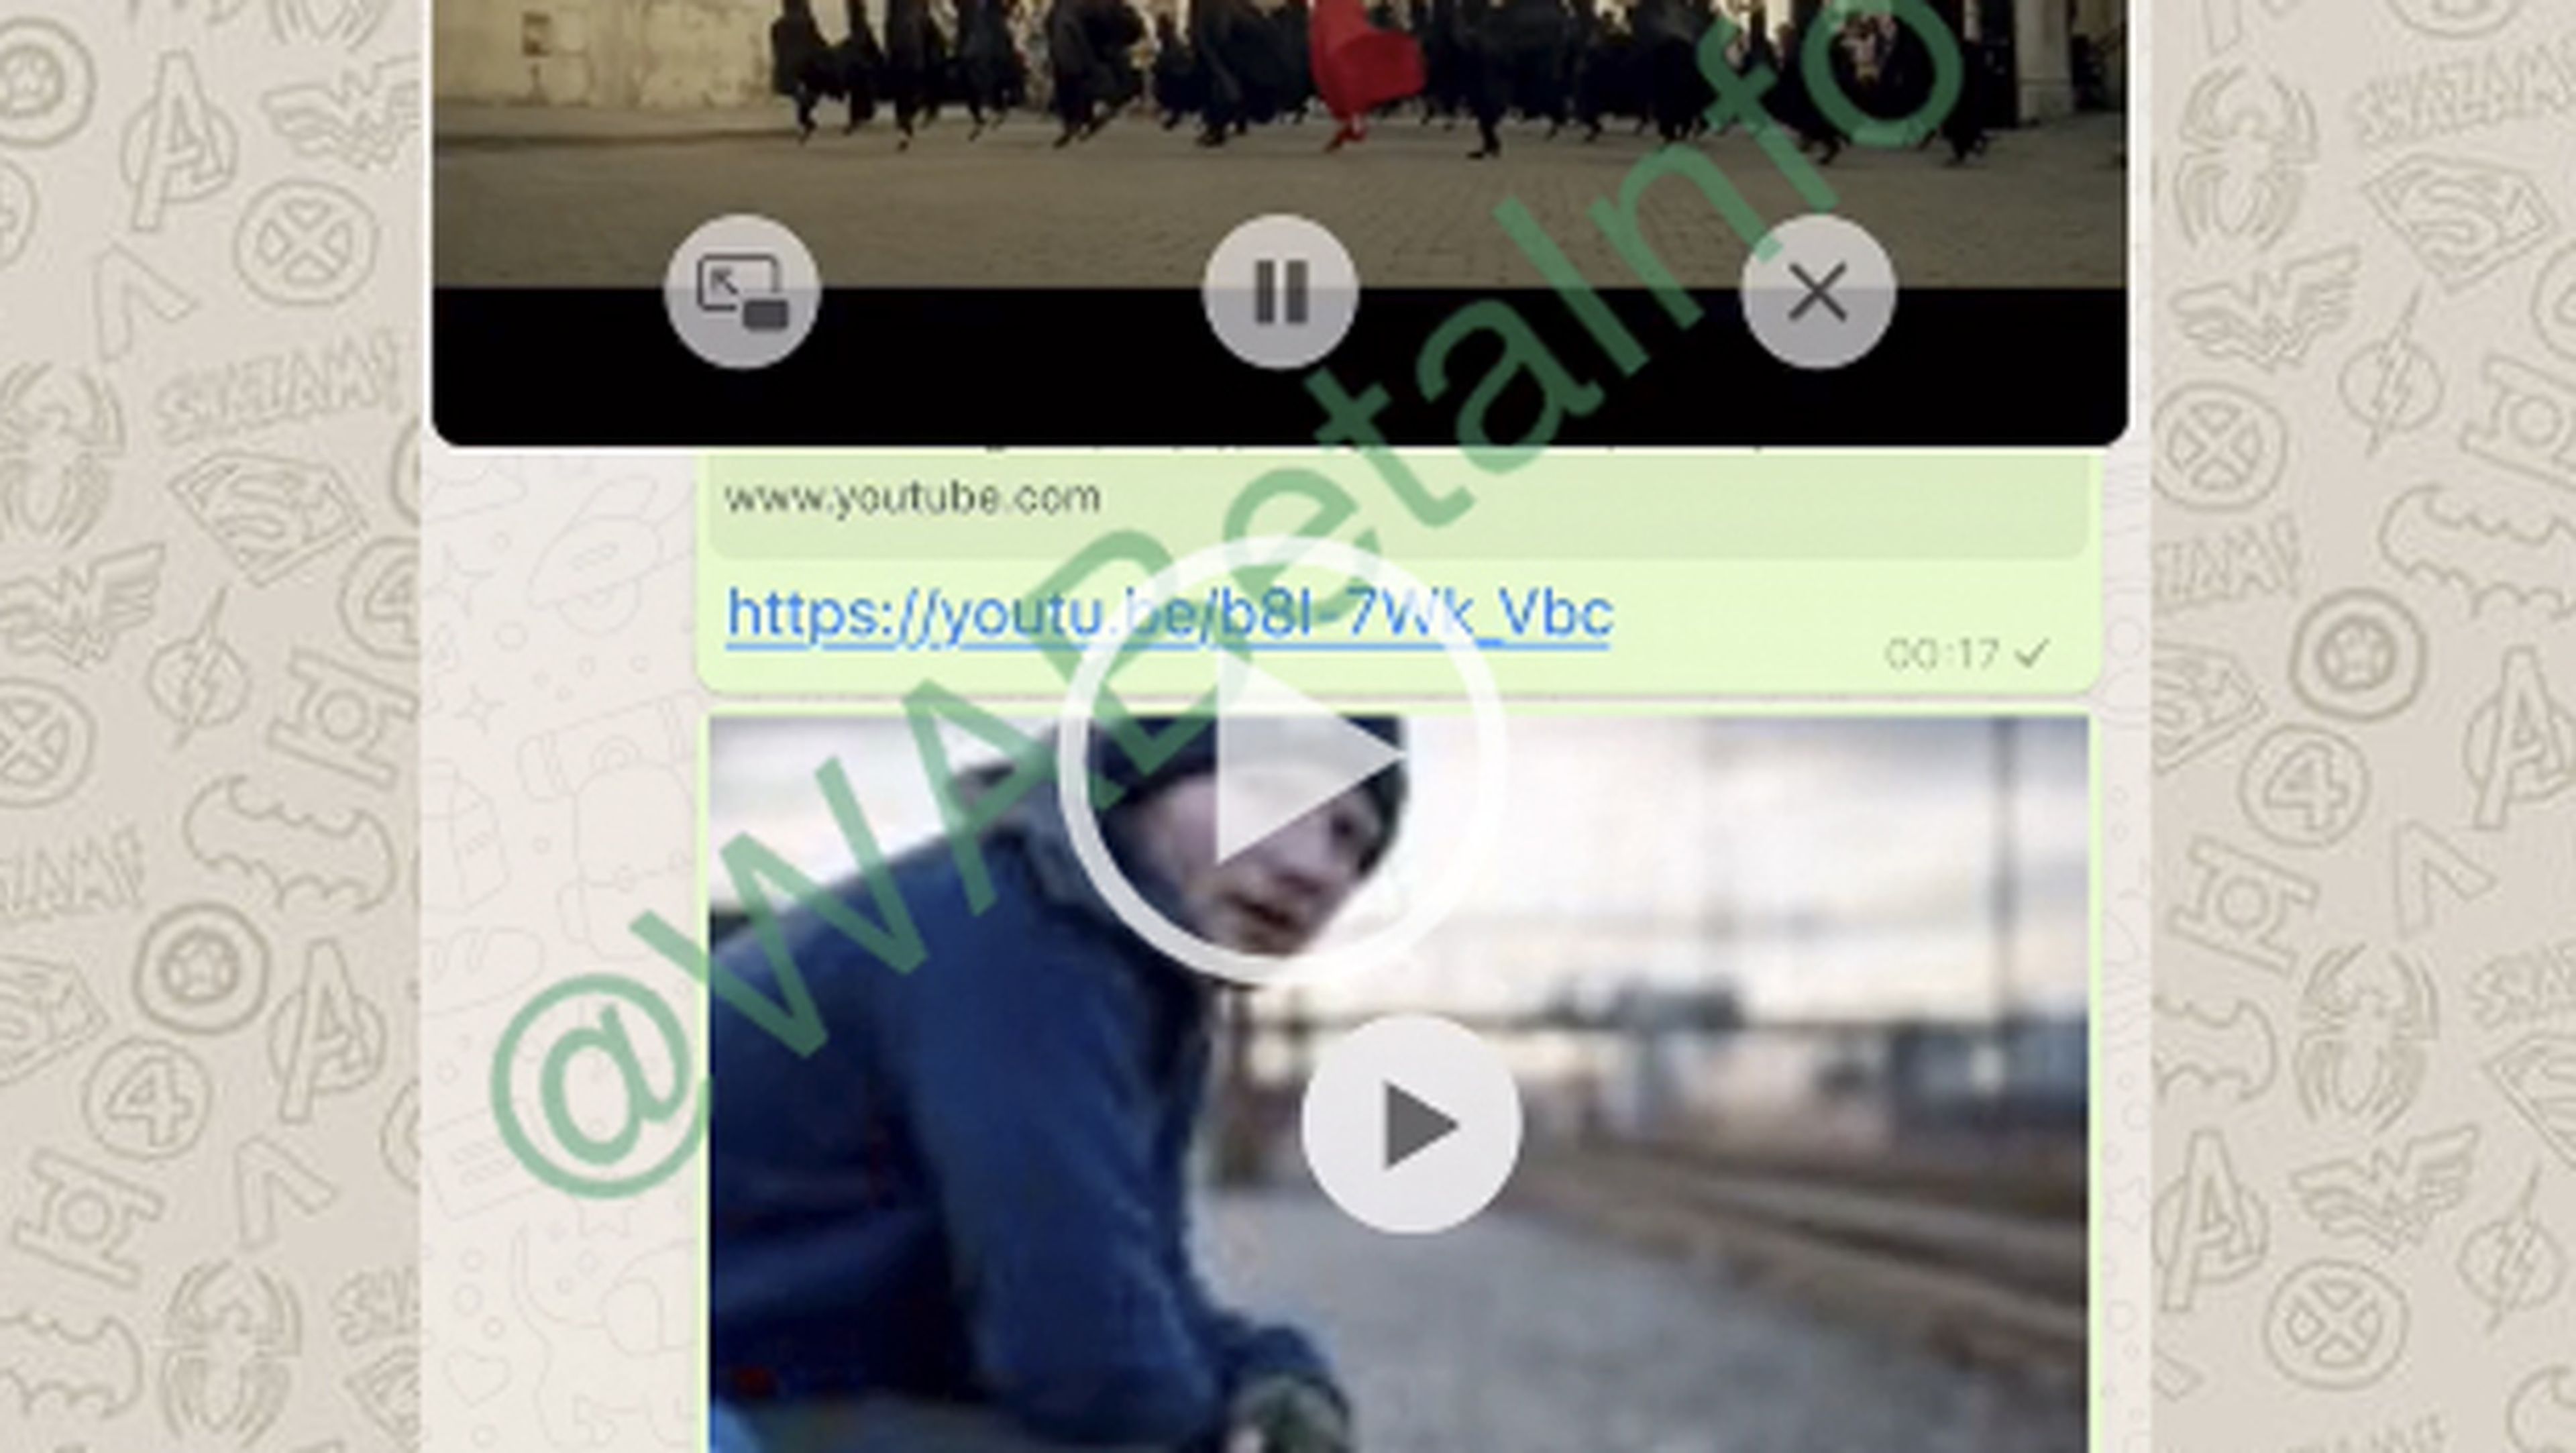 WhatsApp permitirá ver los vídeos de YouTube desde la aplicación